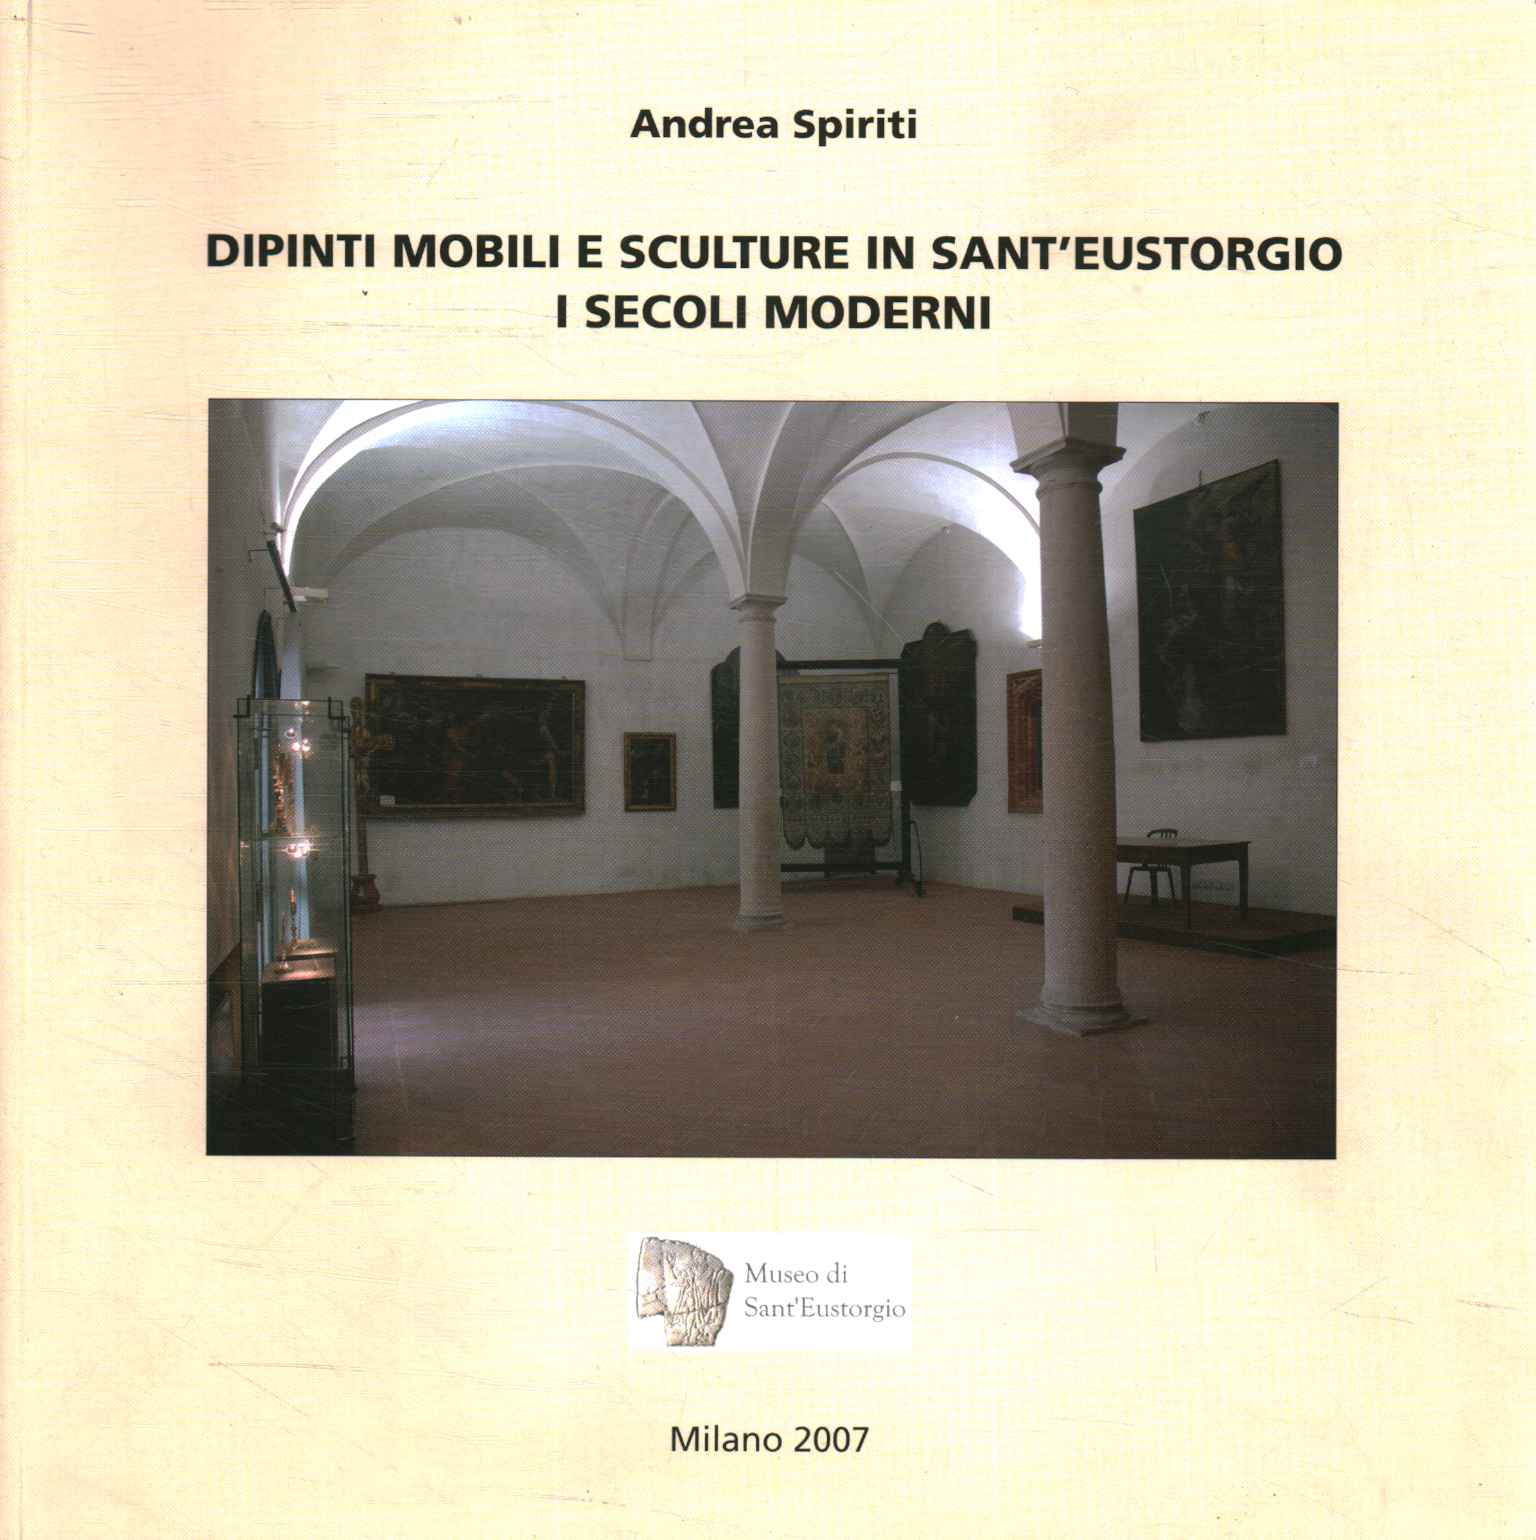 Pinturas y esculturas móviles en Sant0apostr